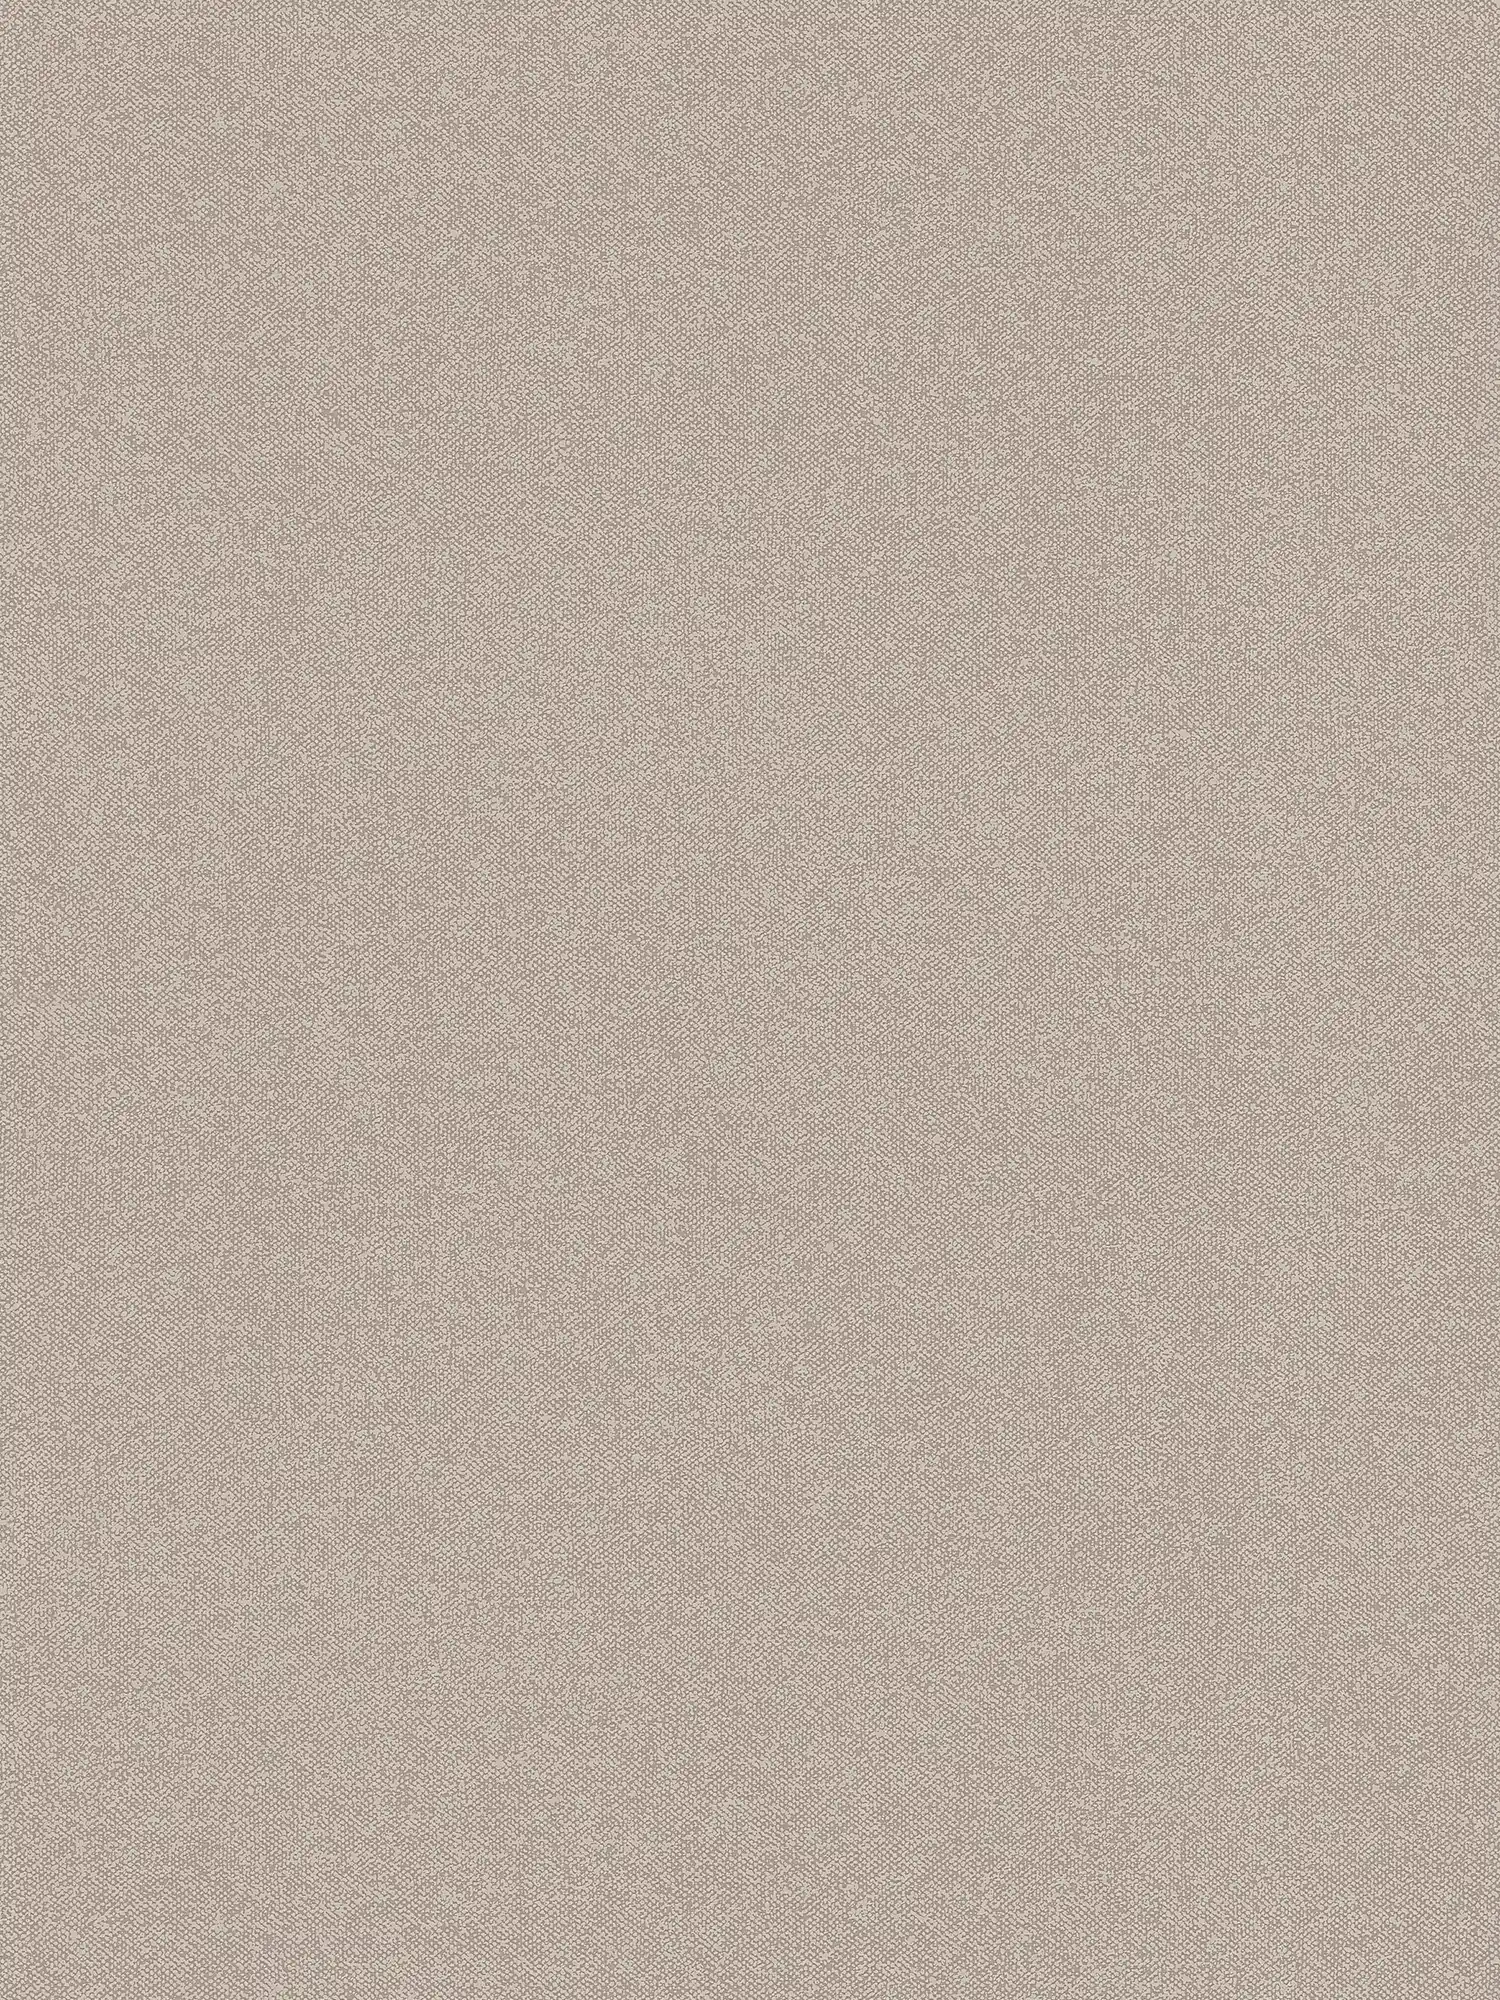 Papel pintado liso con textura de lino - marrón
